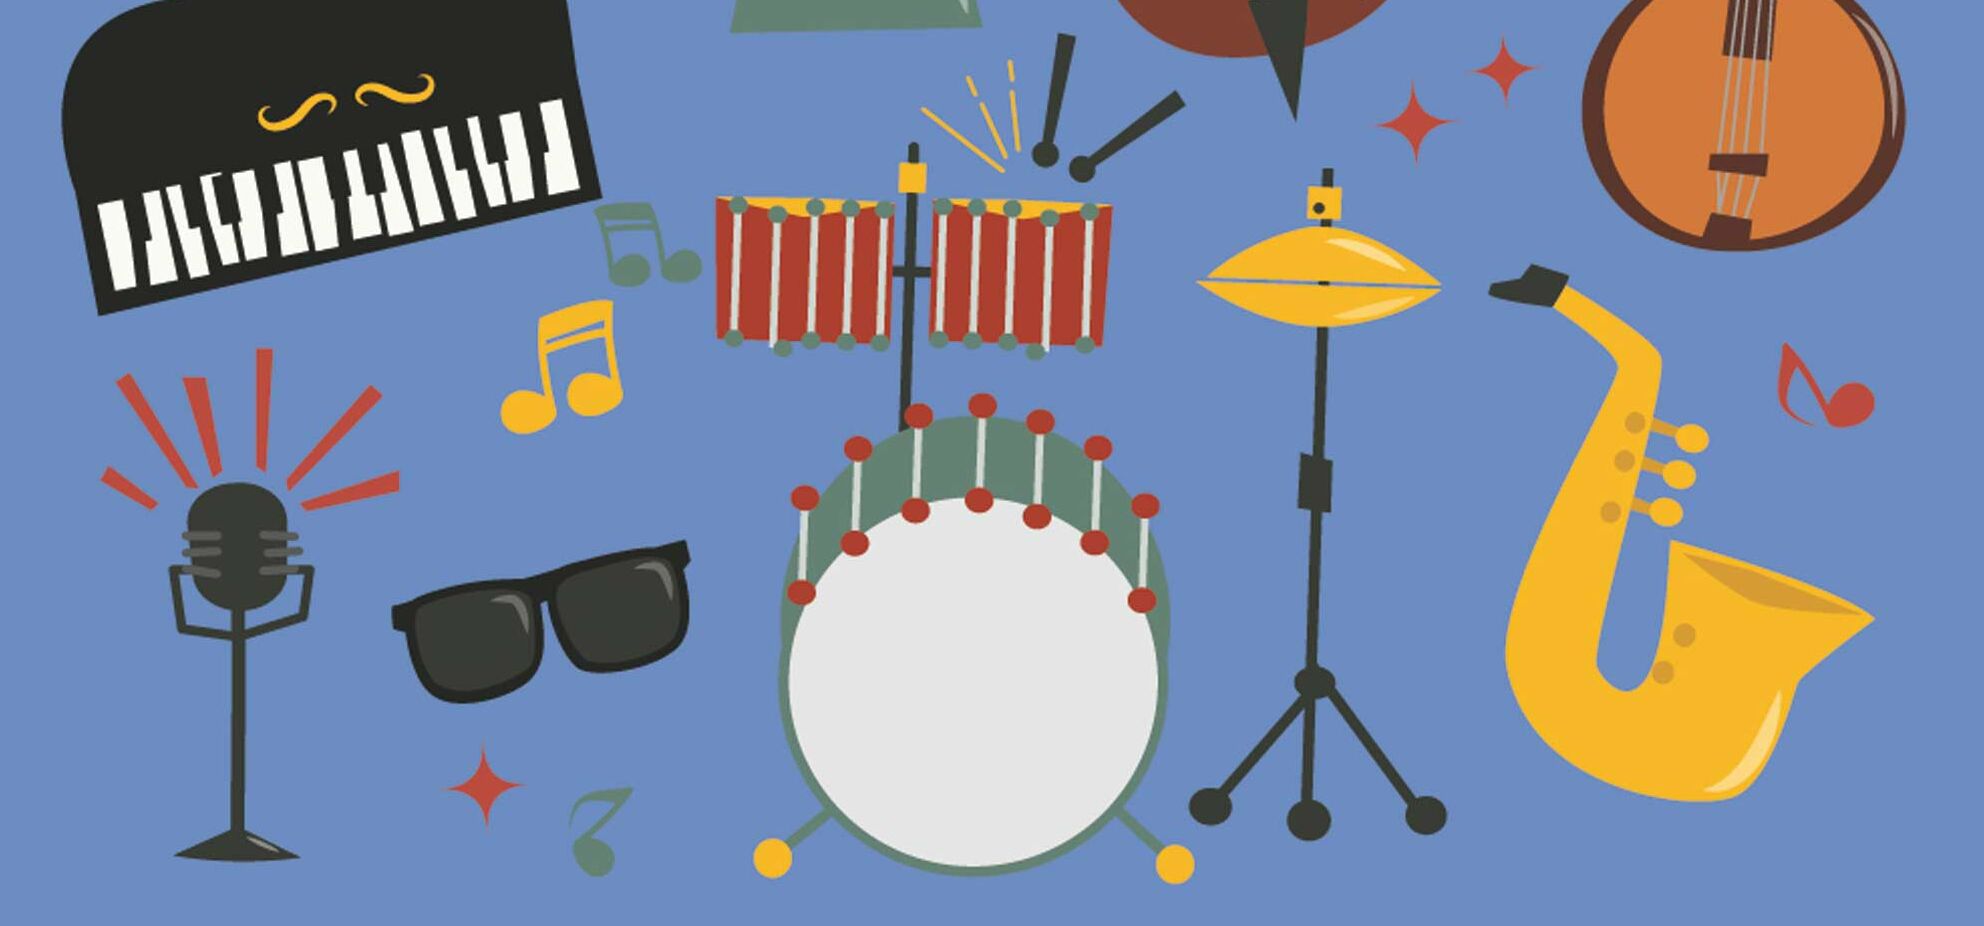 blauer Hintergrund, Klavier, Schlagzeug, Saxophon, Trompete, Trommeln, Sonnenbrille, Noten